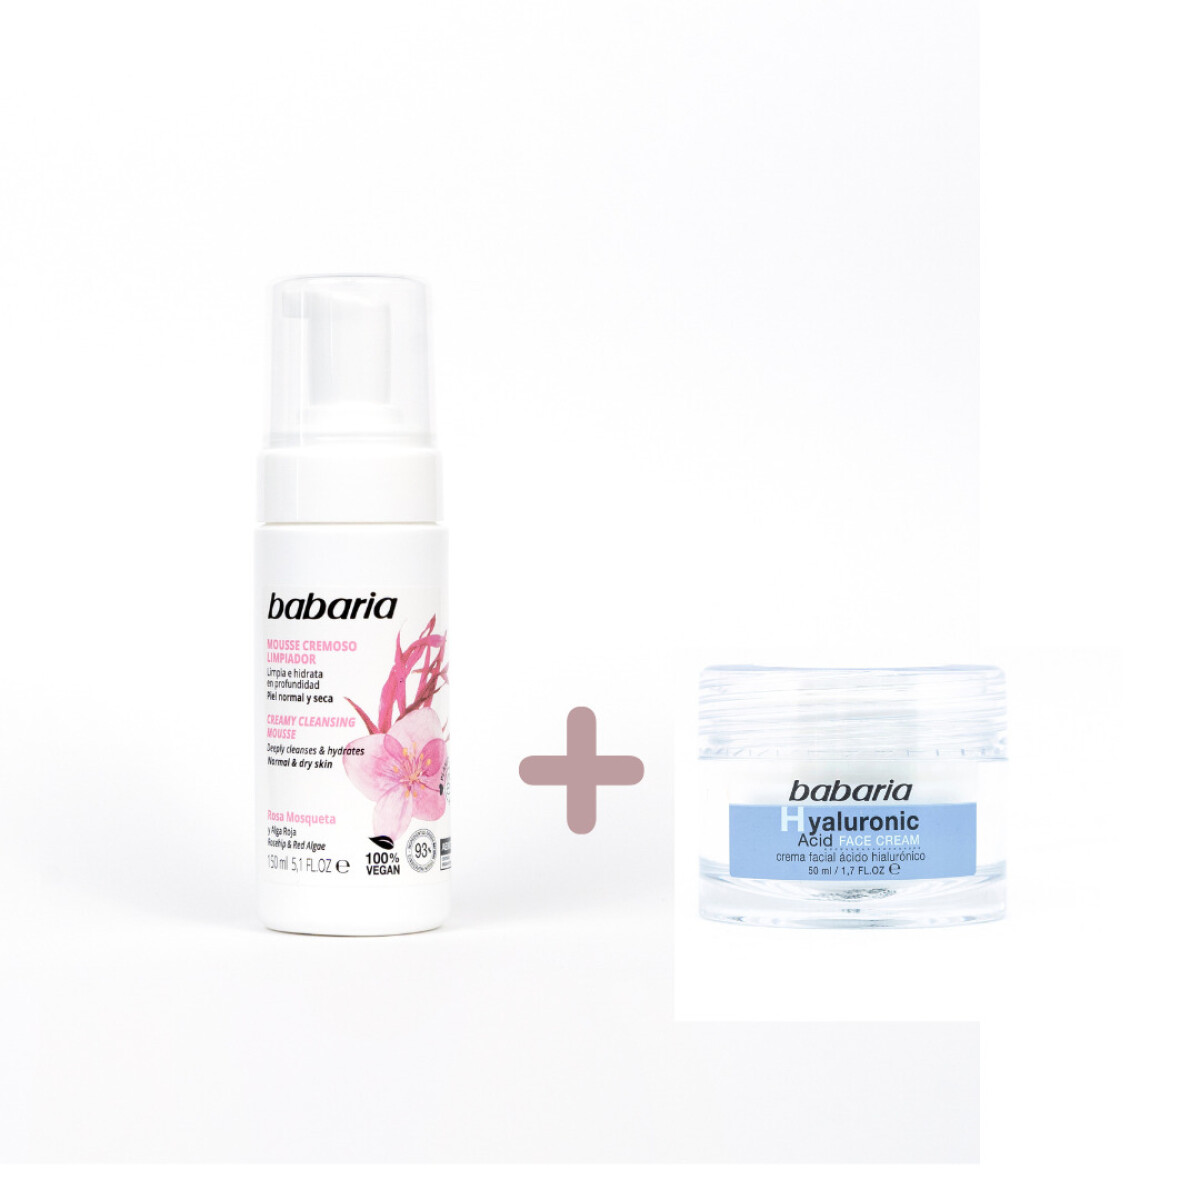 Rutina básica de skincare - Mousse limpiador + crema hidratante - Ácido hialurónico 